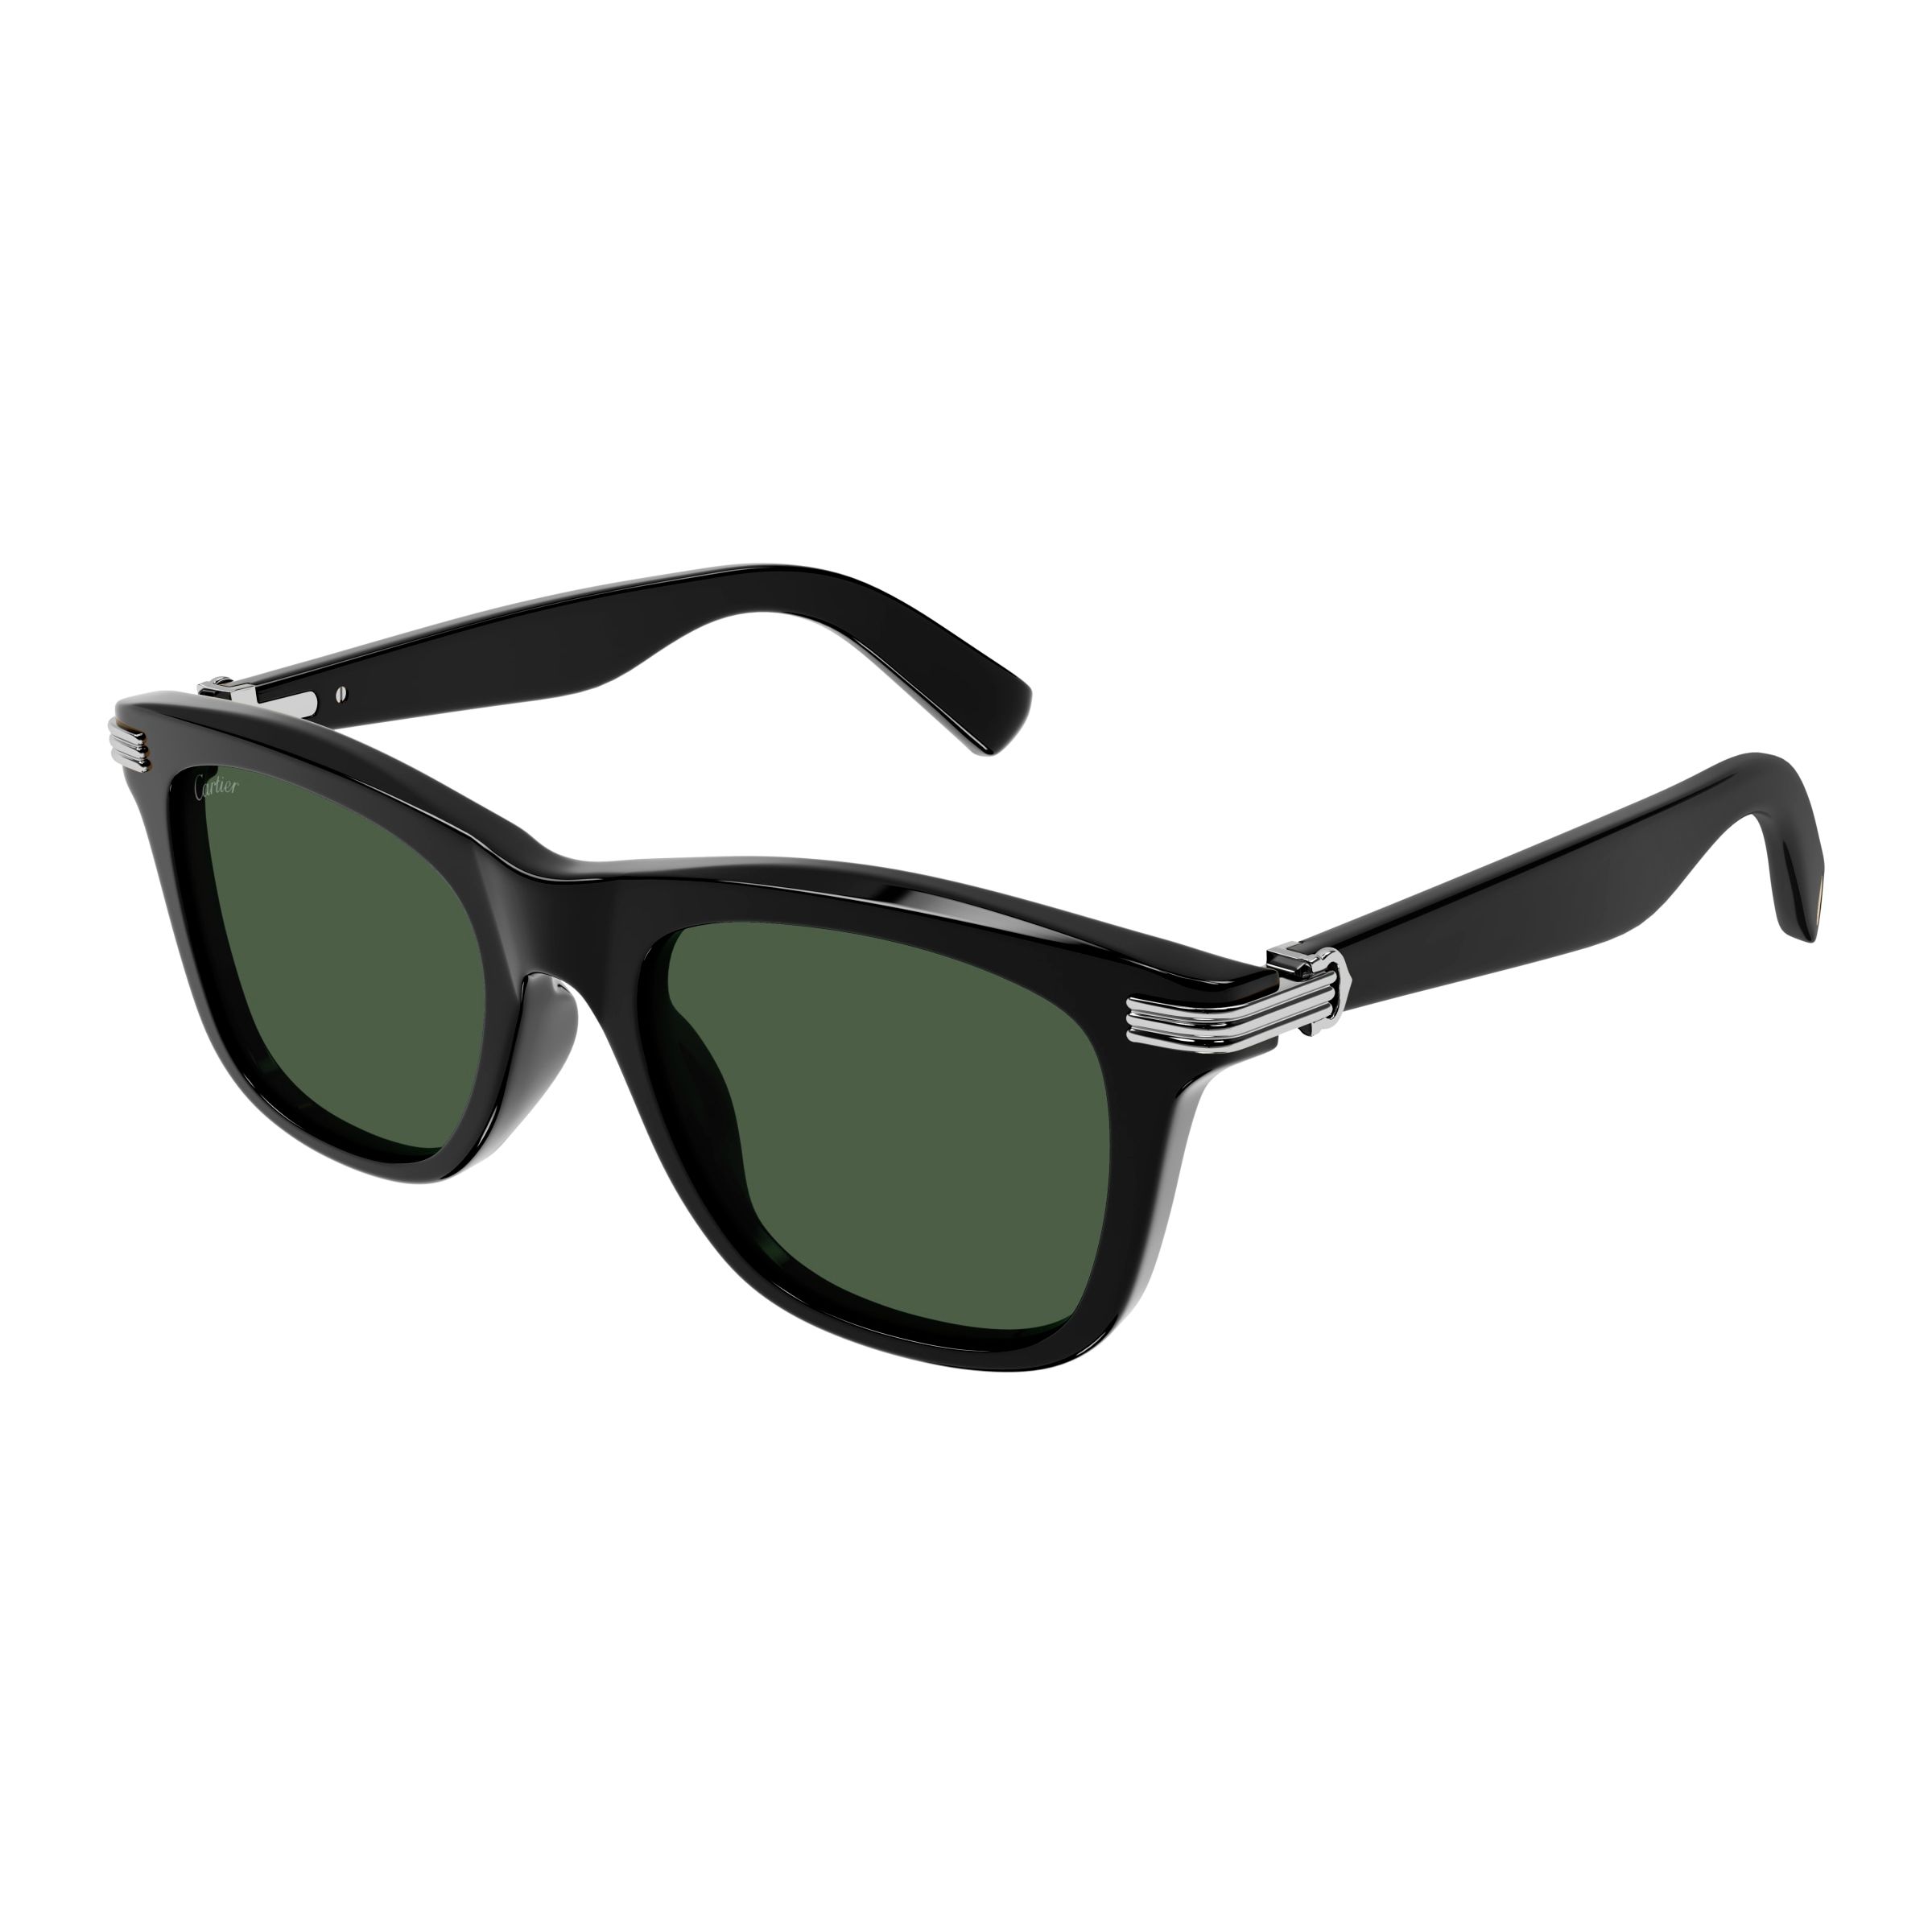 CT0396S Square Sunglasses 5 - size 53